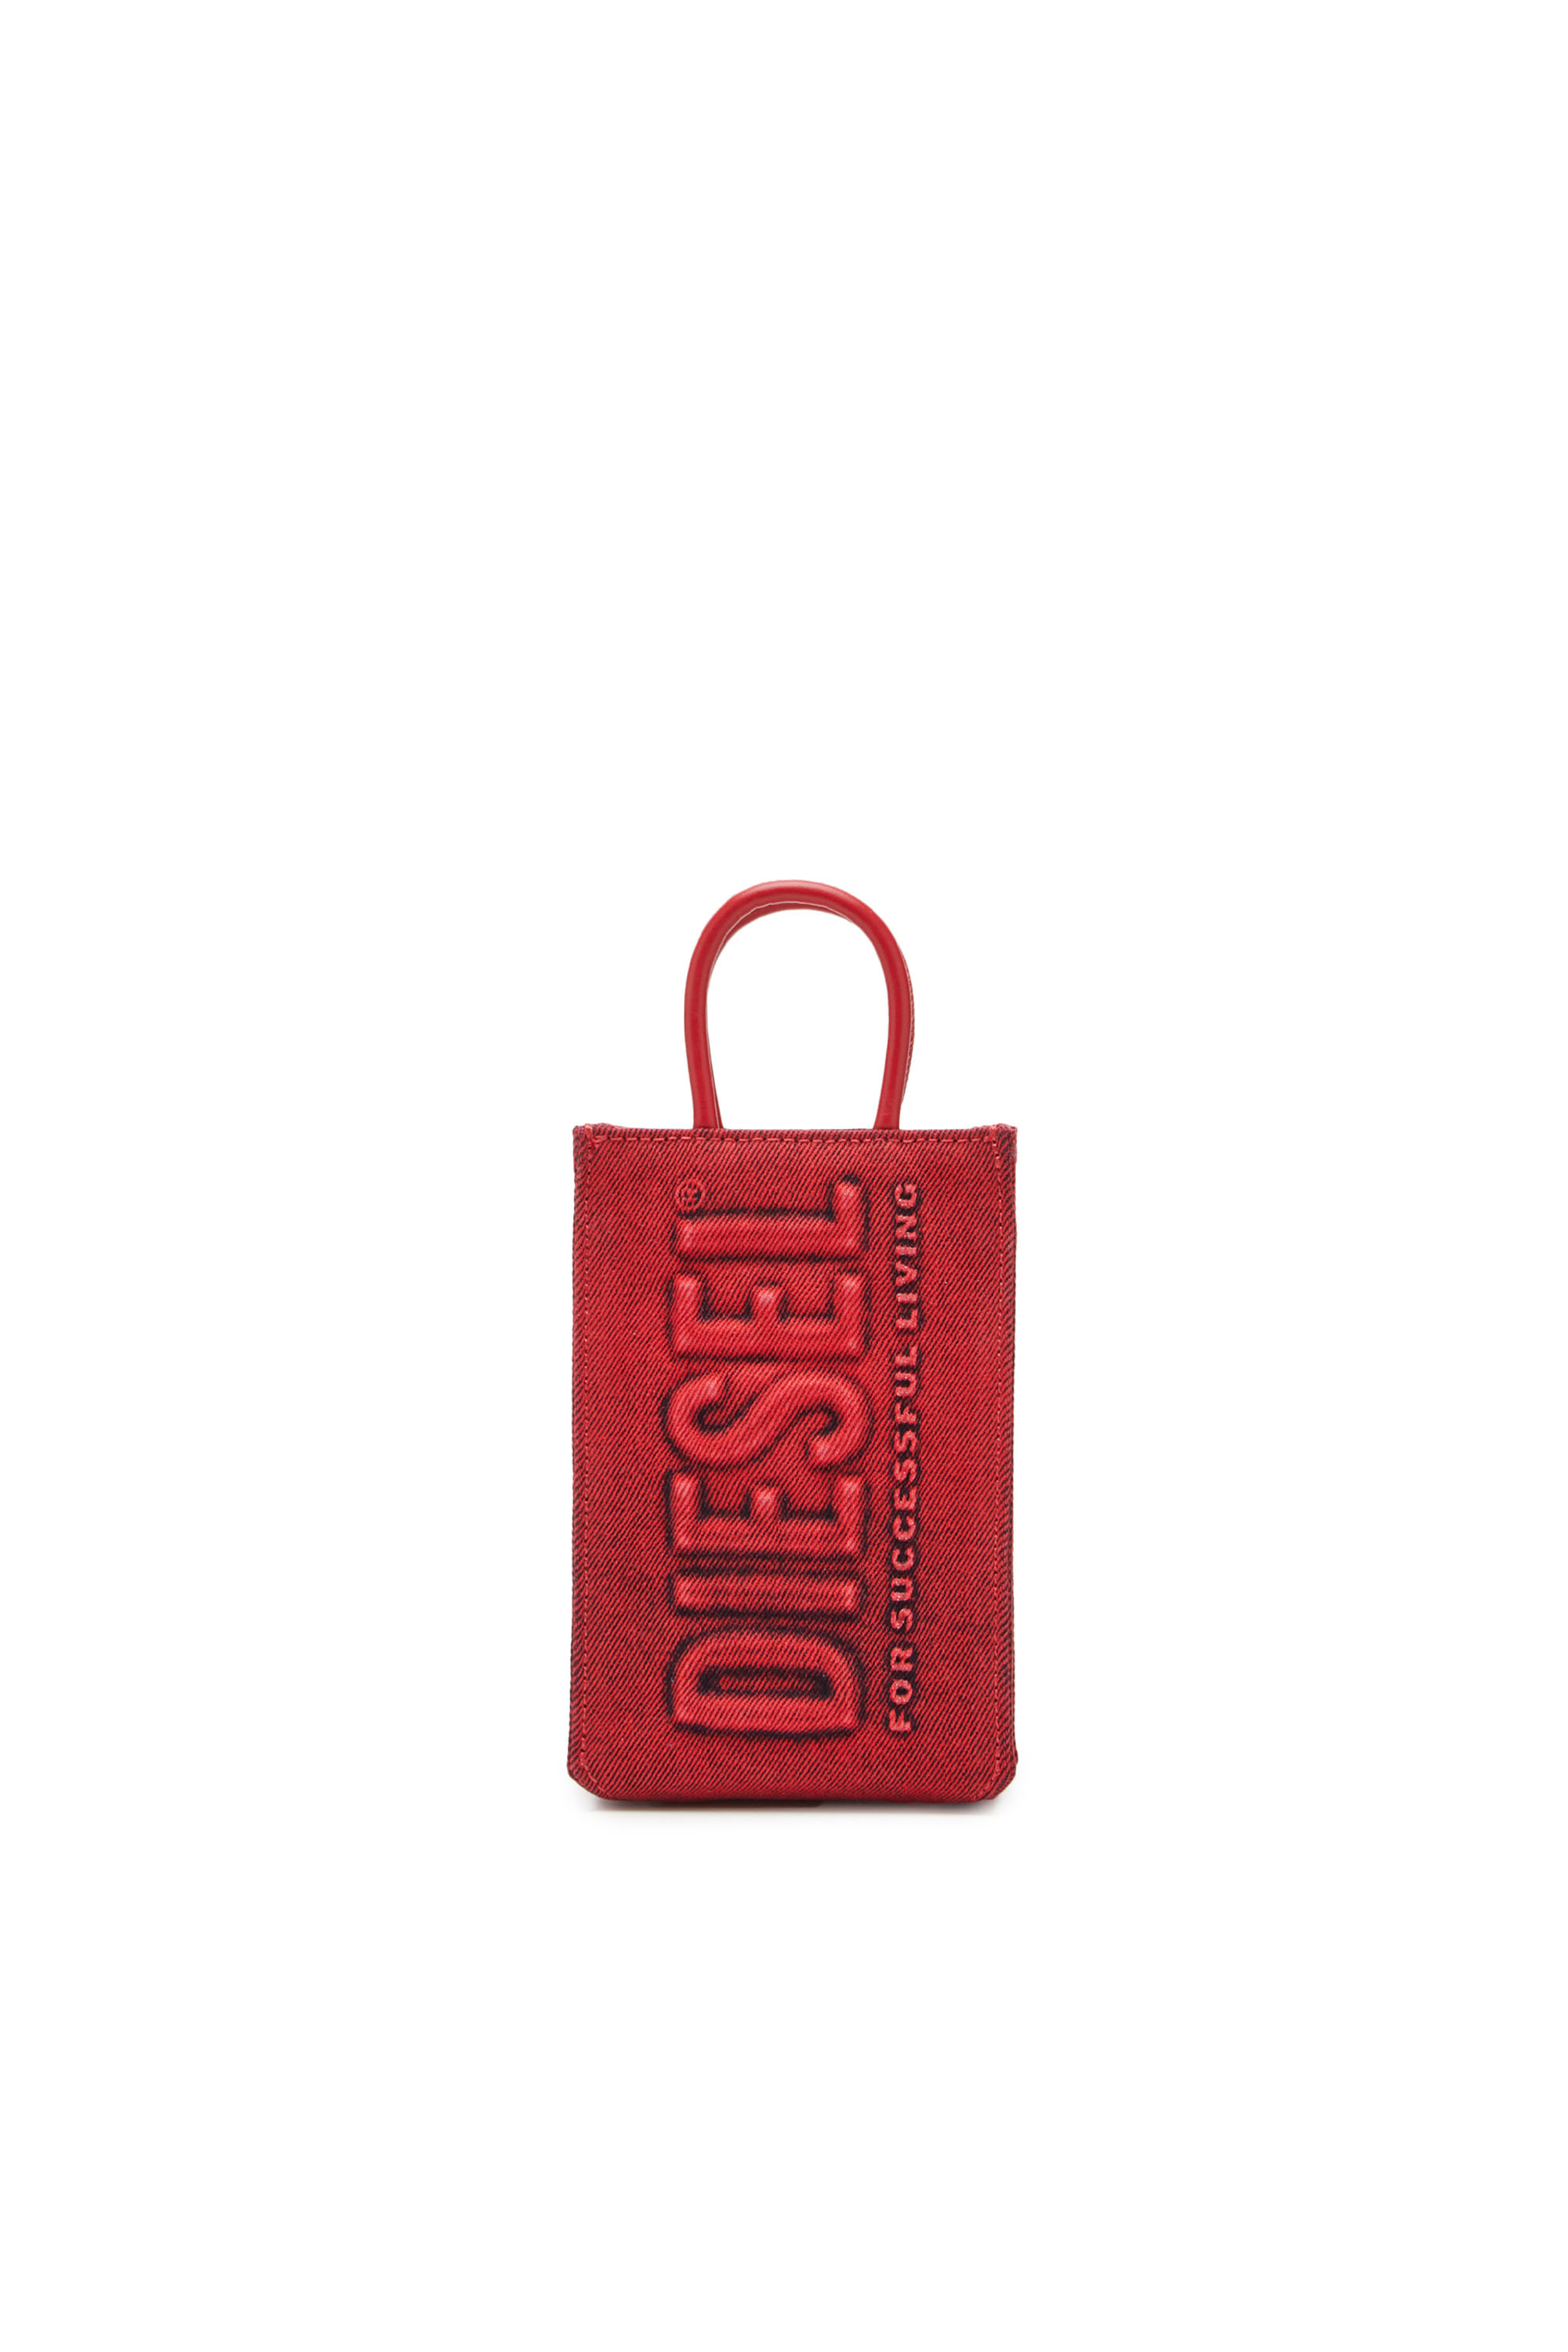 Diesel - DSL SHOPPER 3D MINI X, Rosso - Image 1